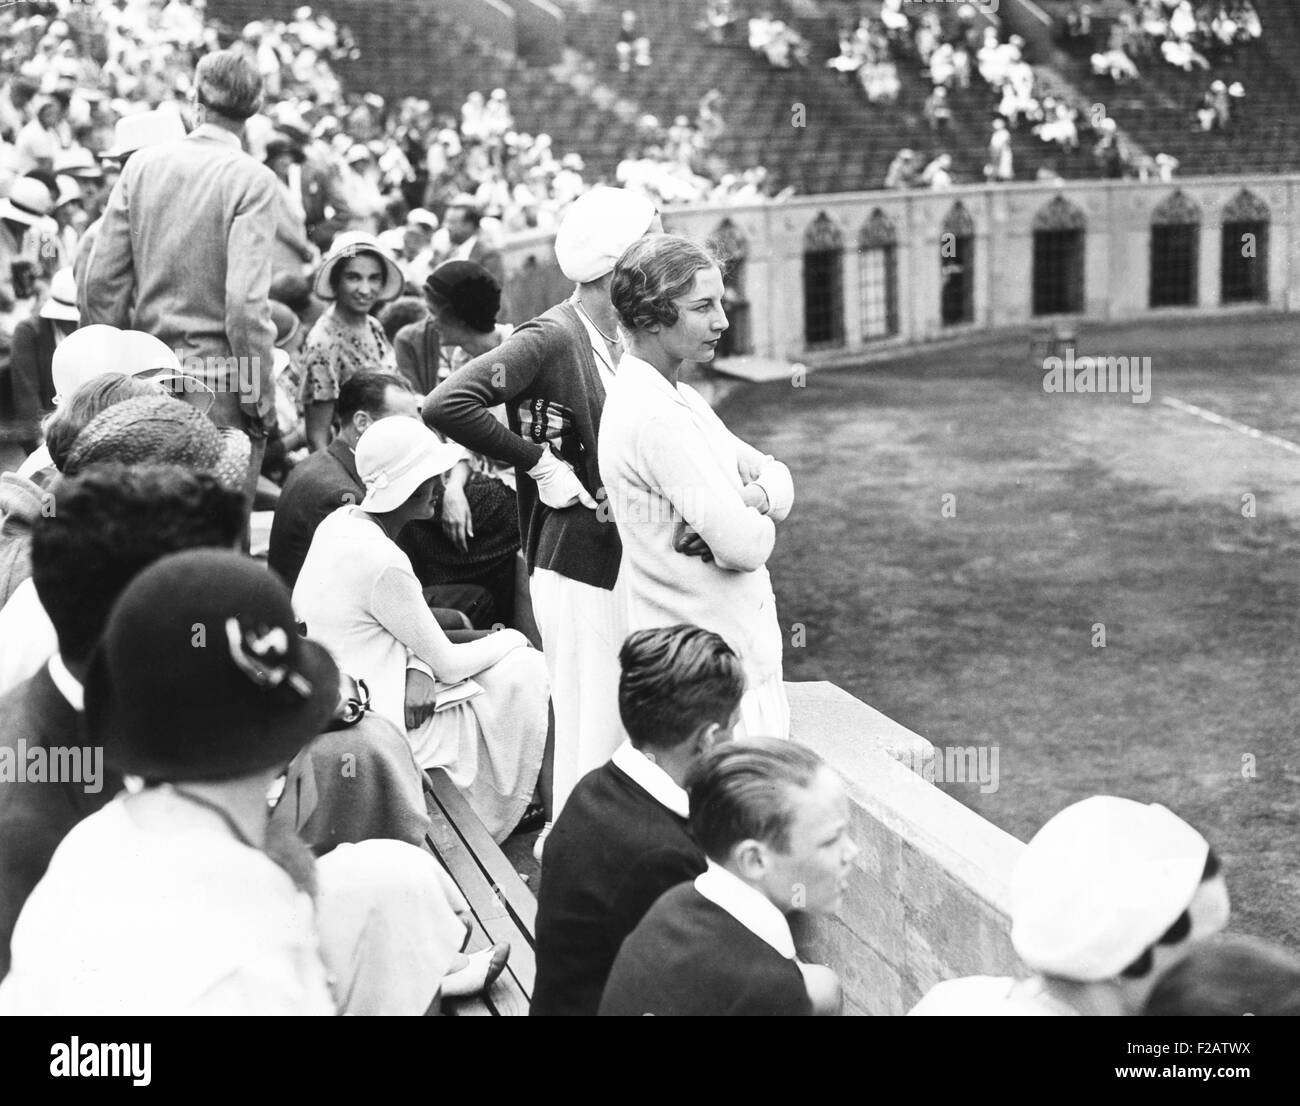 Helen Wills Moody guardare la partita di tennis al Forest Hills, Long Island, 20 Agosto, 1931. Wills Moody ha vinto il suo U.S. Donne Singoli Tennis finale contro il giocatore britannico, Eileen Bennett Whittingstall. (CSU 2015 11 1575) Foto Stock